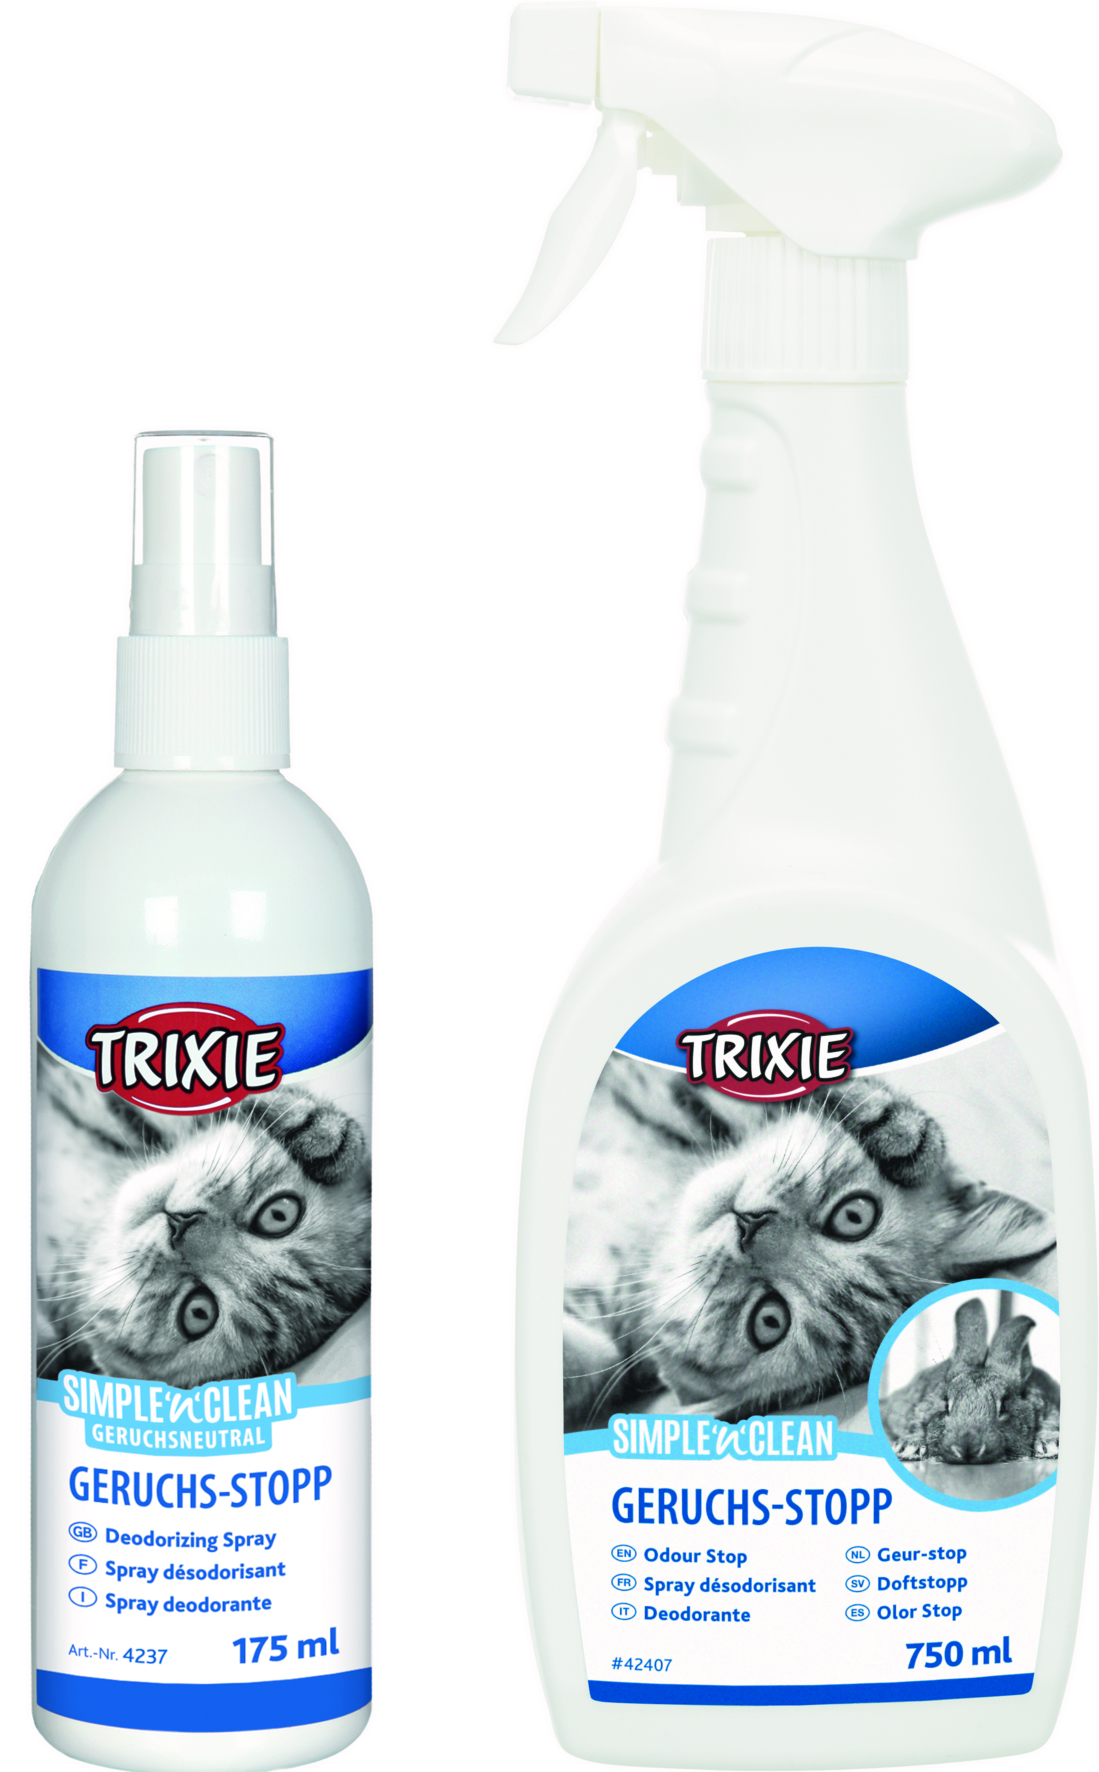 Trixie Simple'n'Clean Geruchs-Stopp für Katze/Kleintier, 750 ml